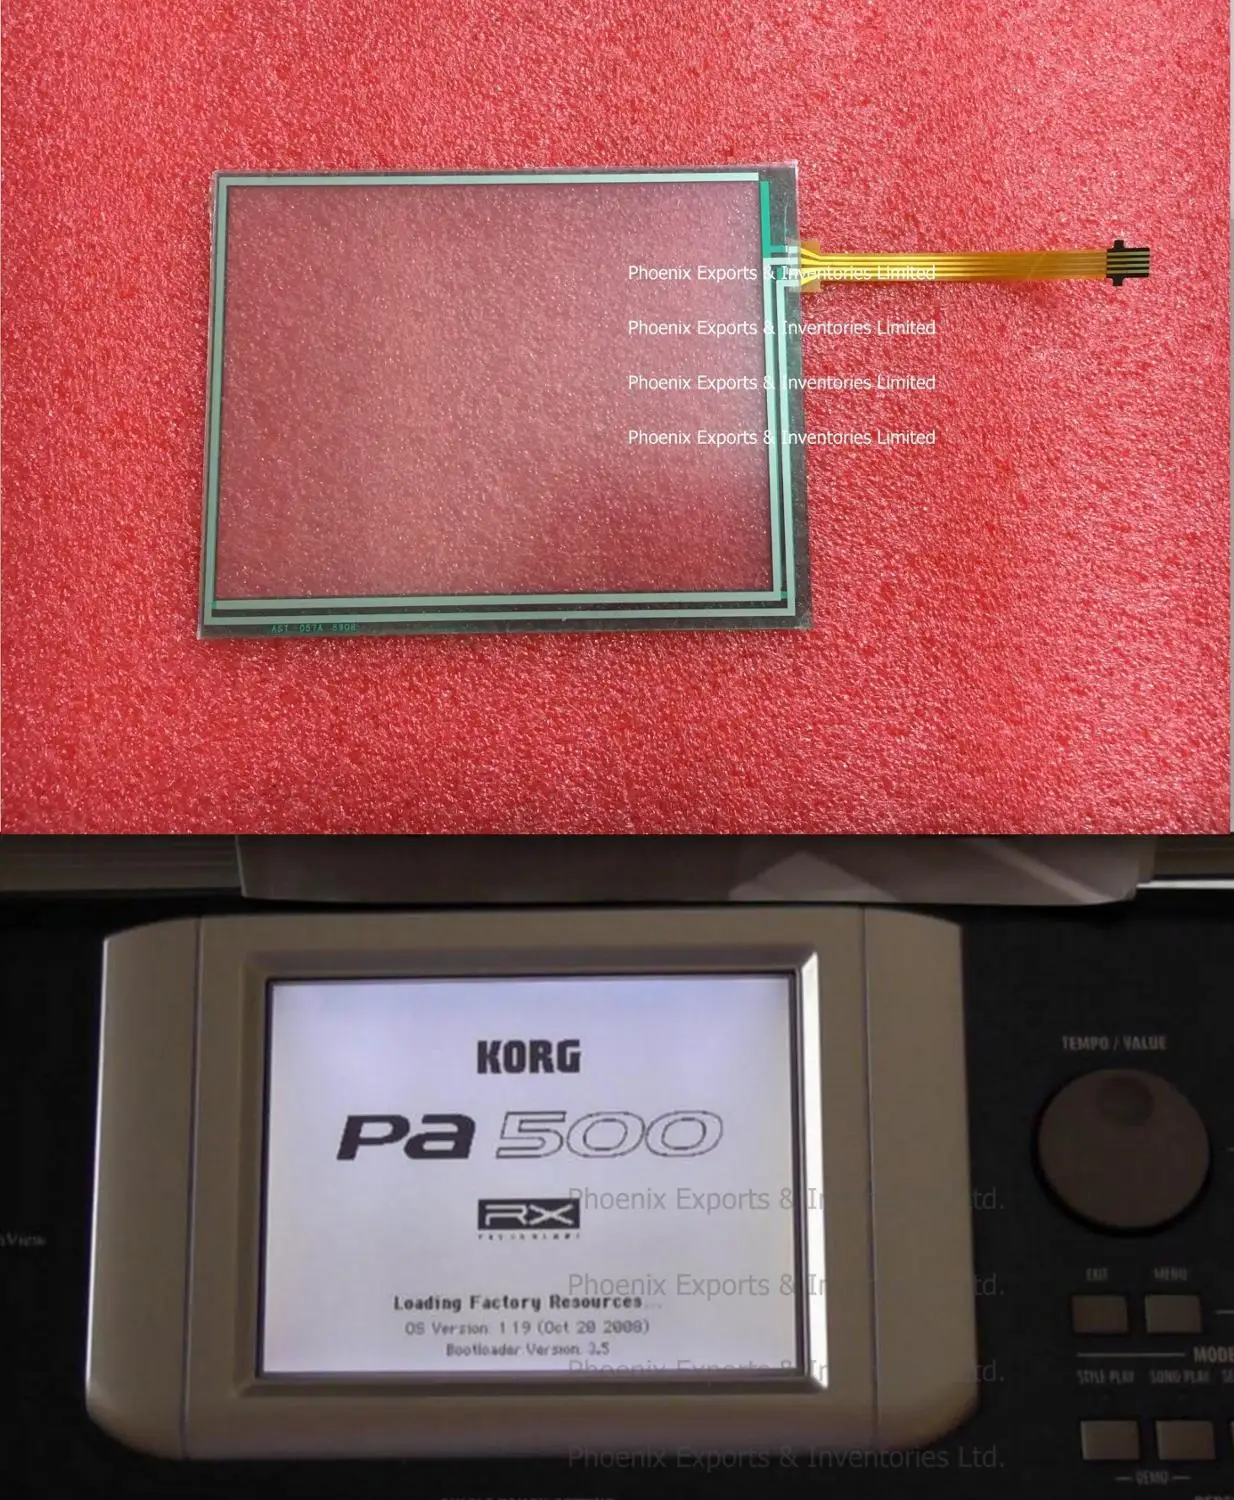 

Original Korg Touch screen Digitizer for Korg PA500 M50 TOUCH SCREEN DIGITIZER PANEL PAD GLASS